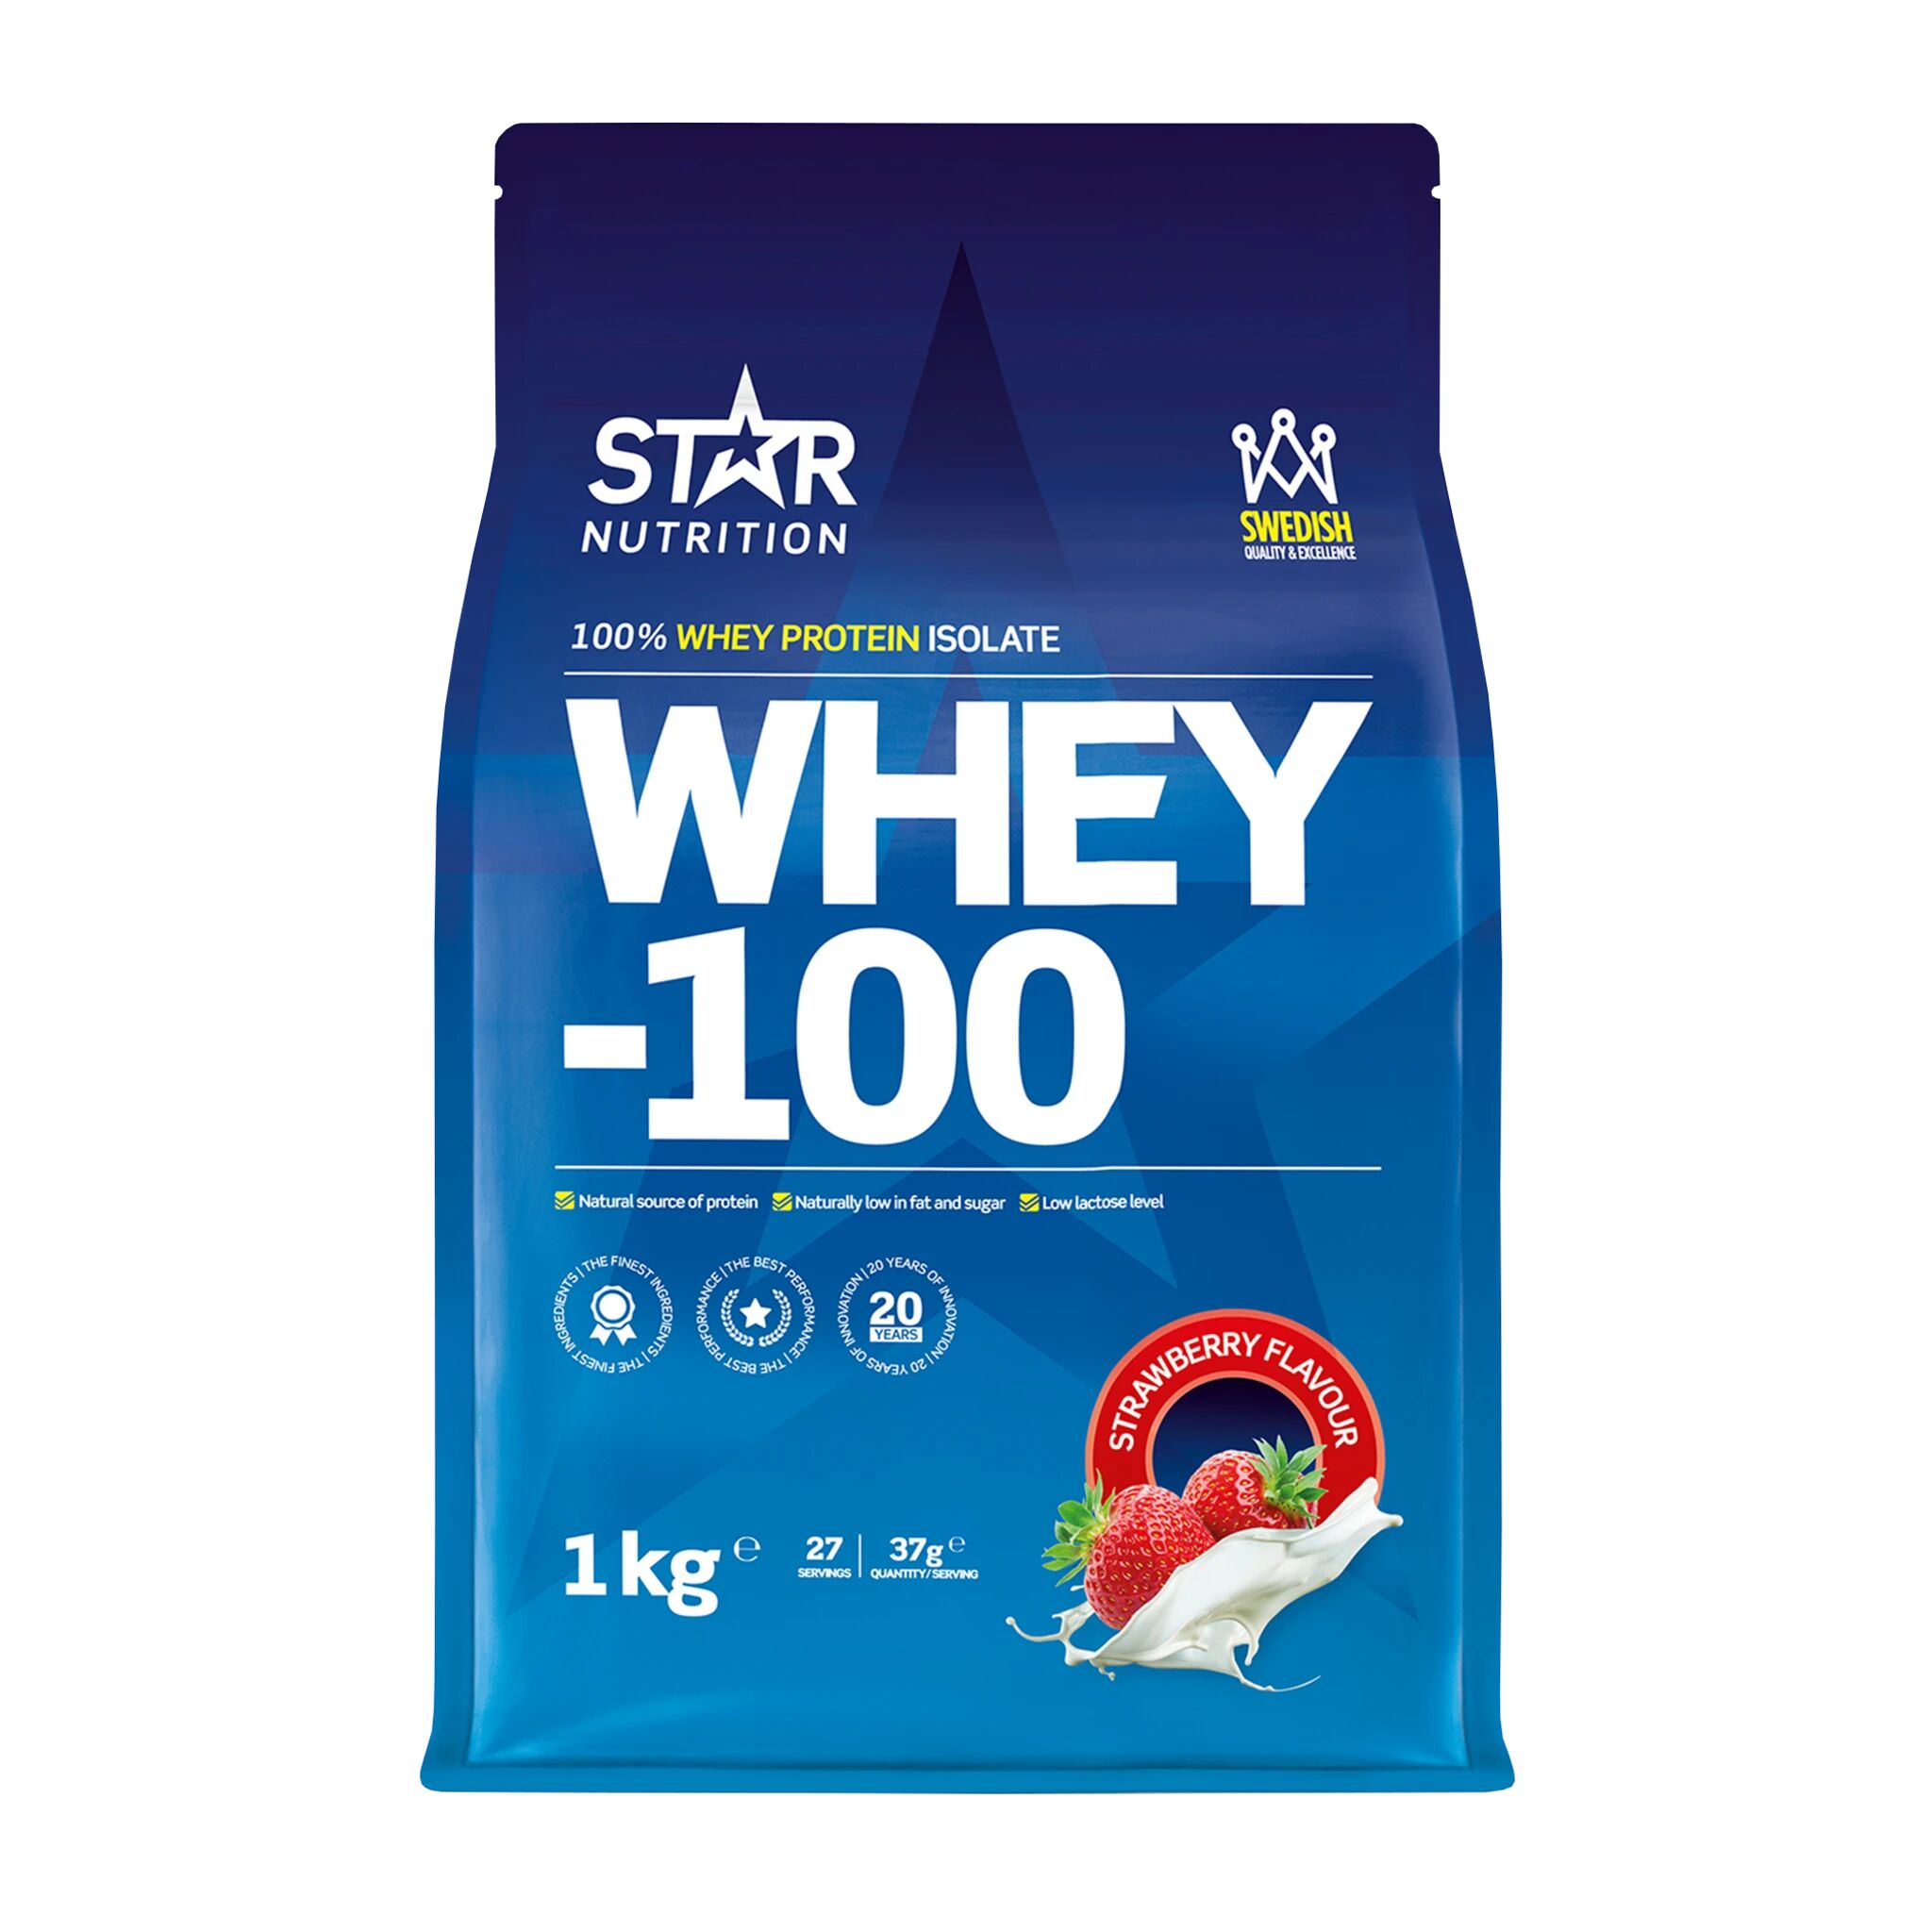 Star Nutrition Whey 100, myseproteinisolat 1000g STRAWBERRY